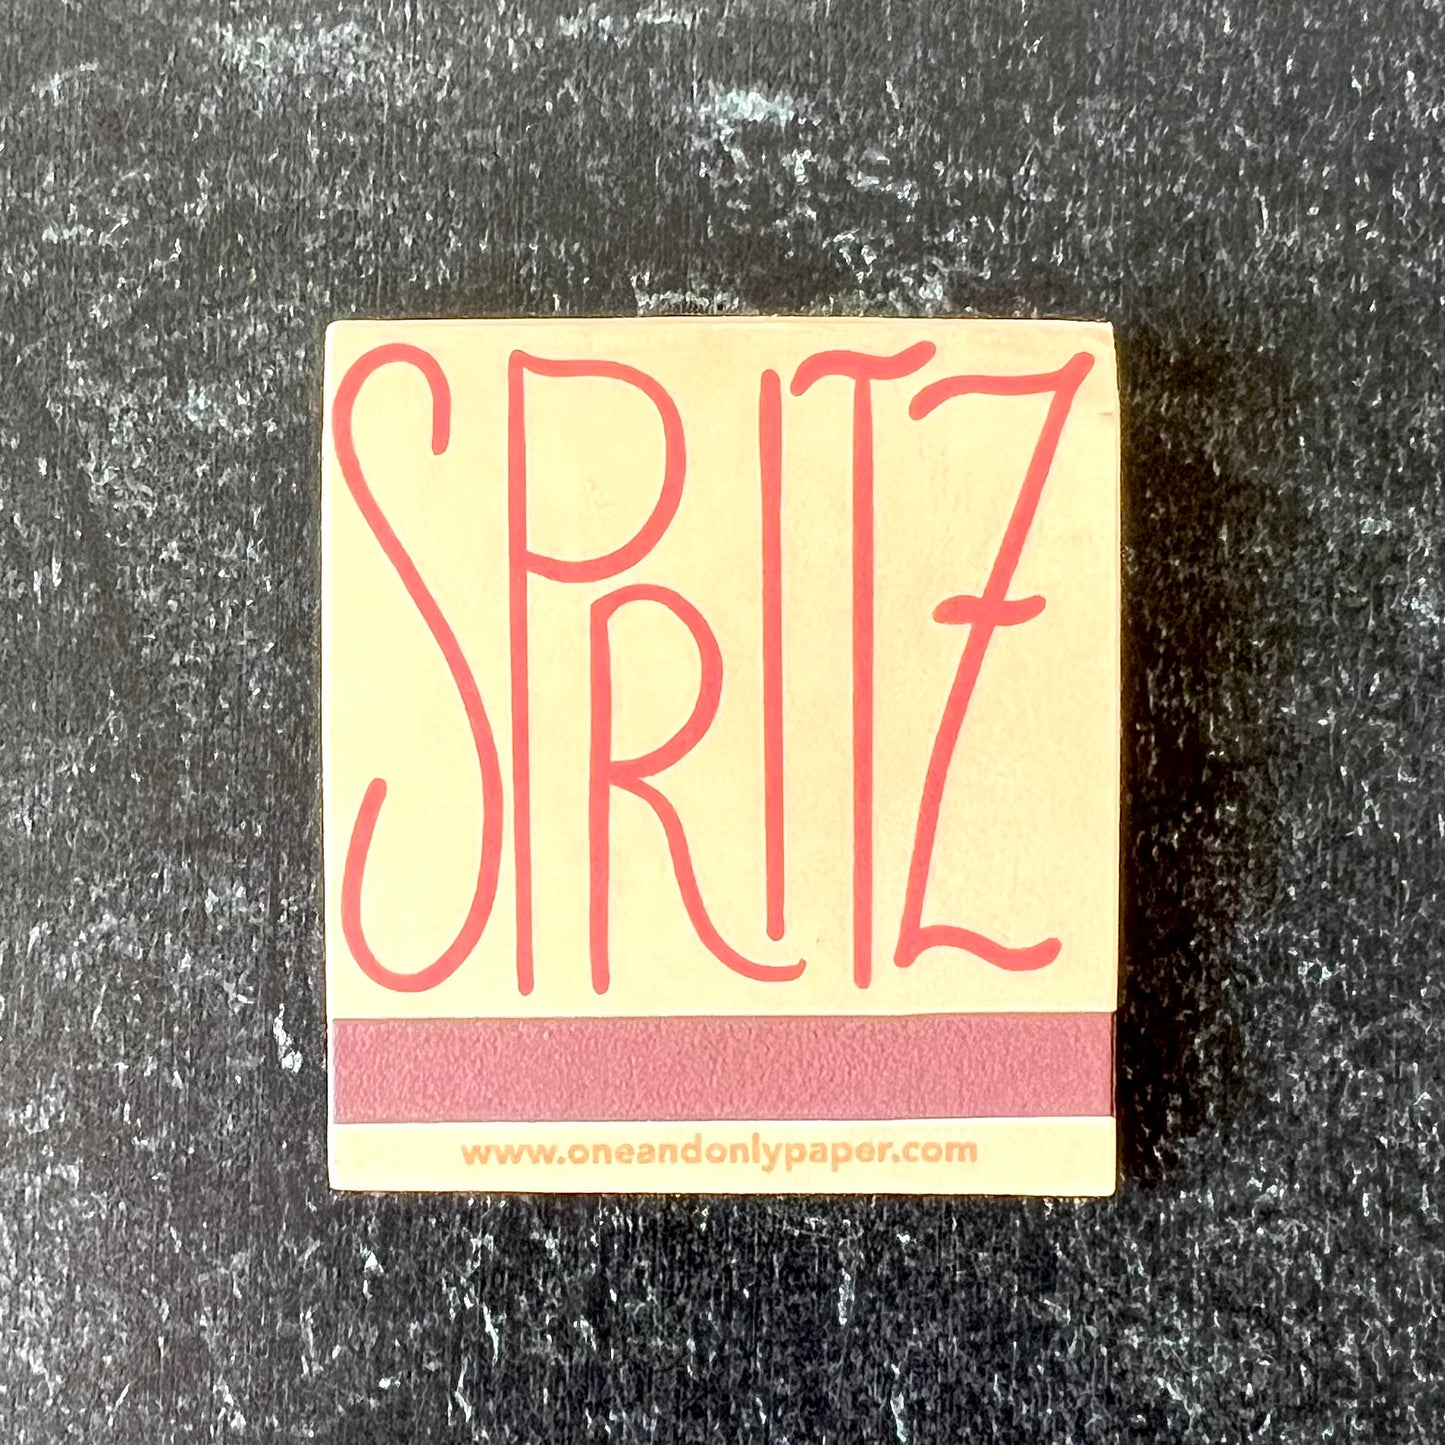 Spritz Italian Summer Matchbook - Humble Abode